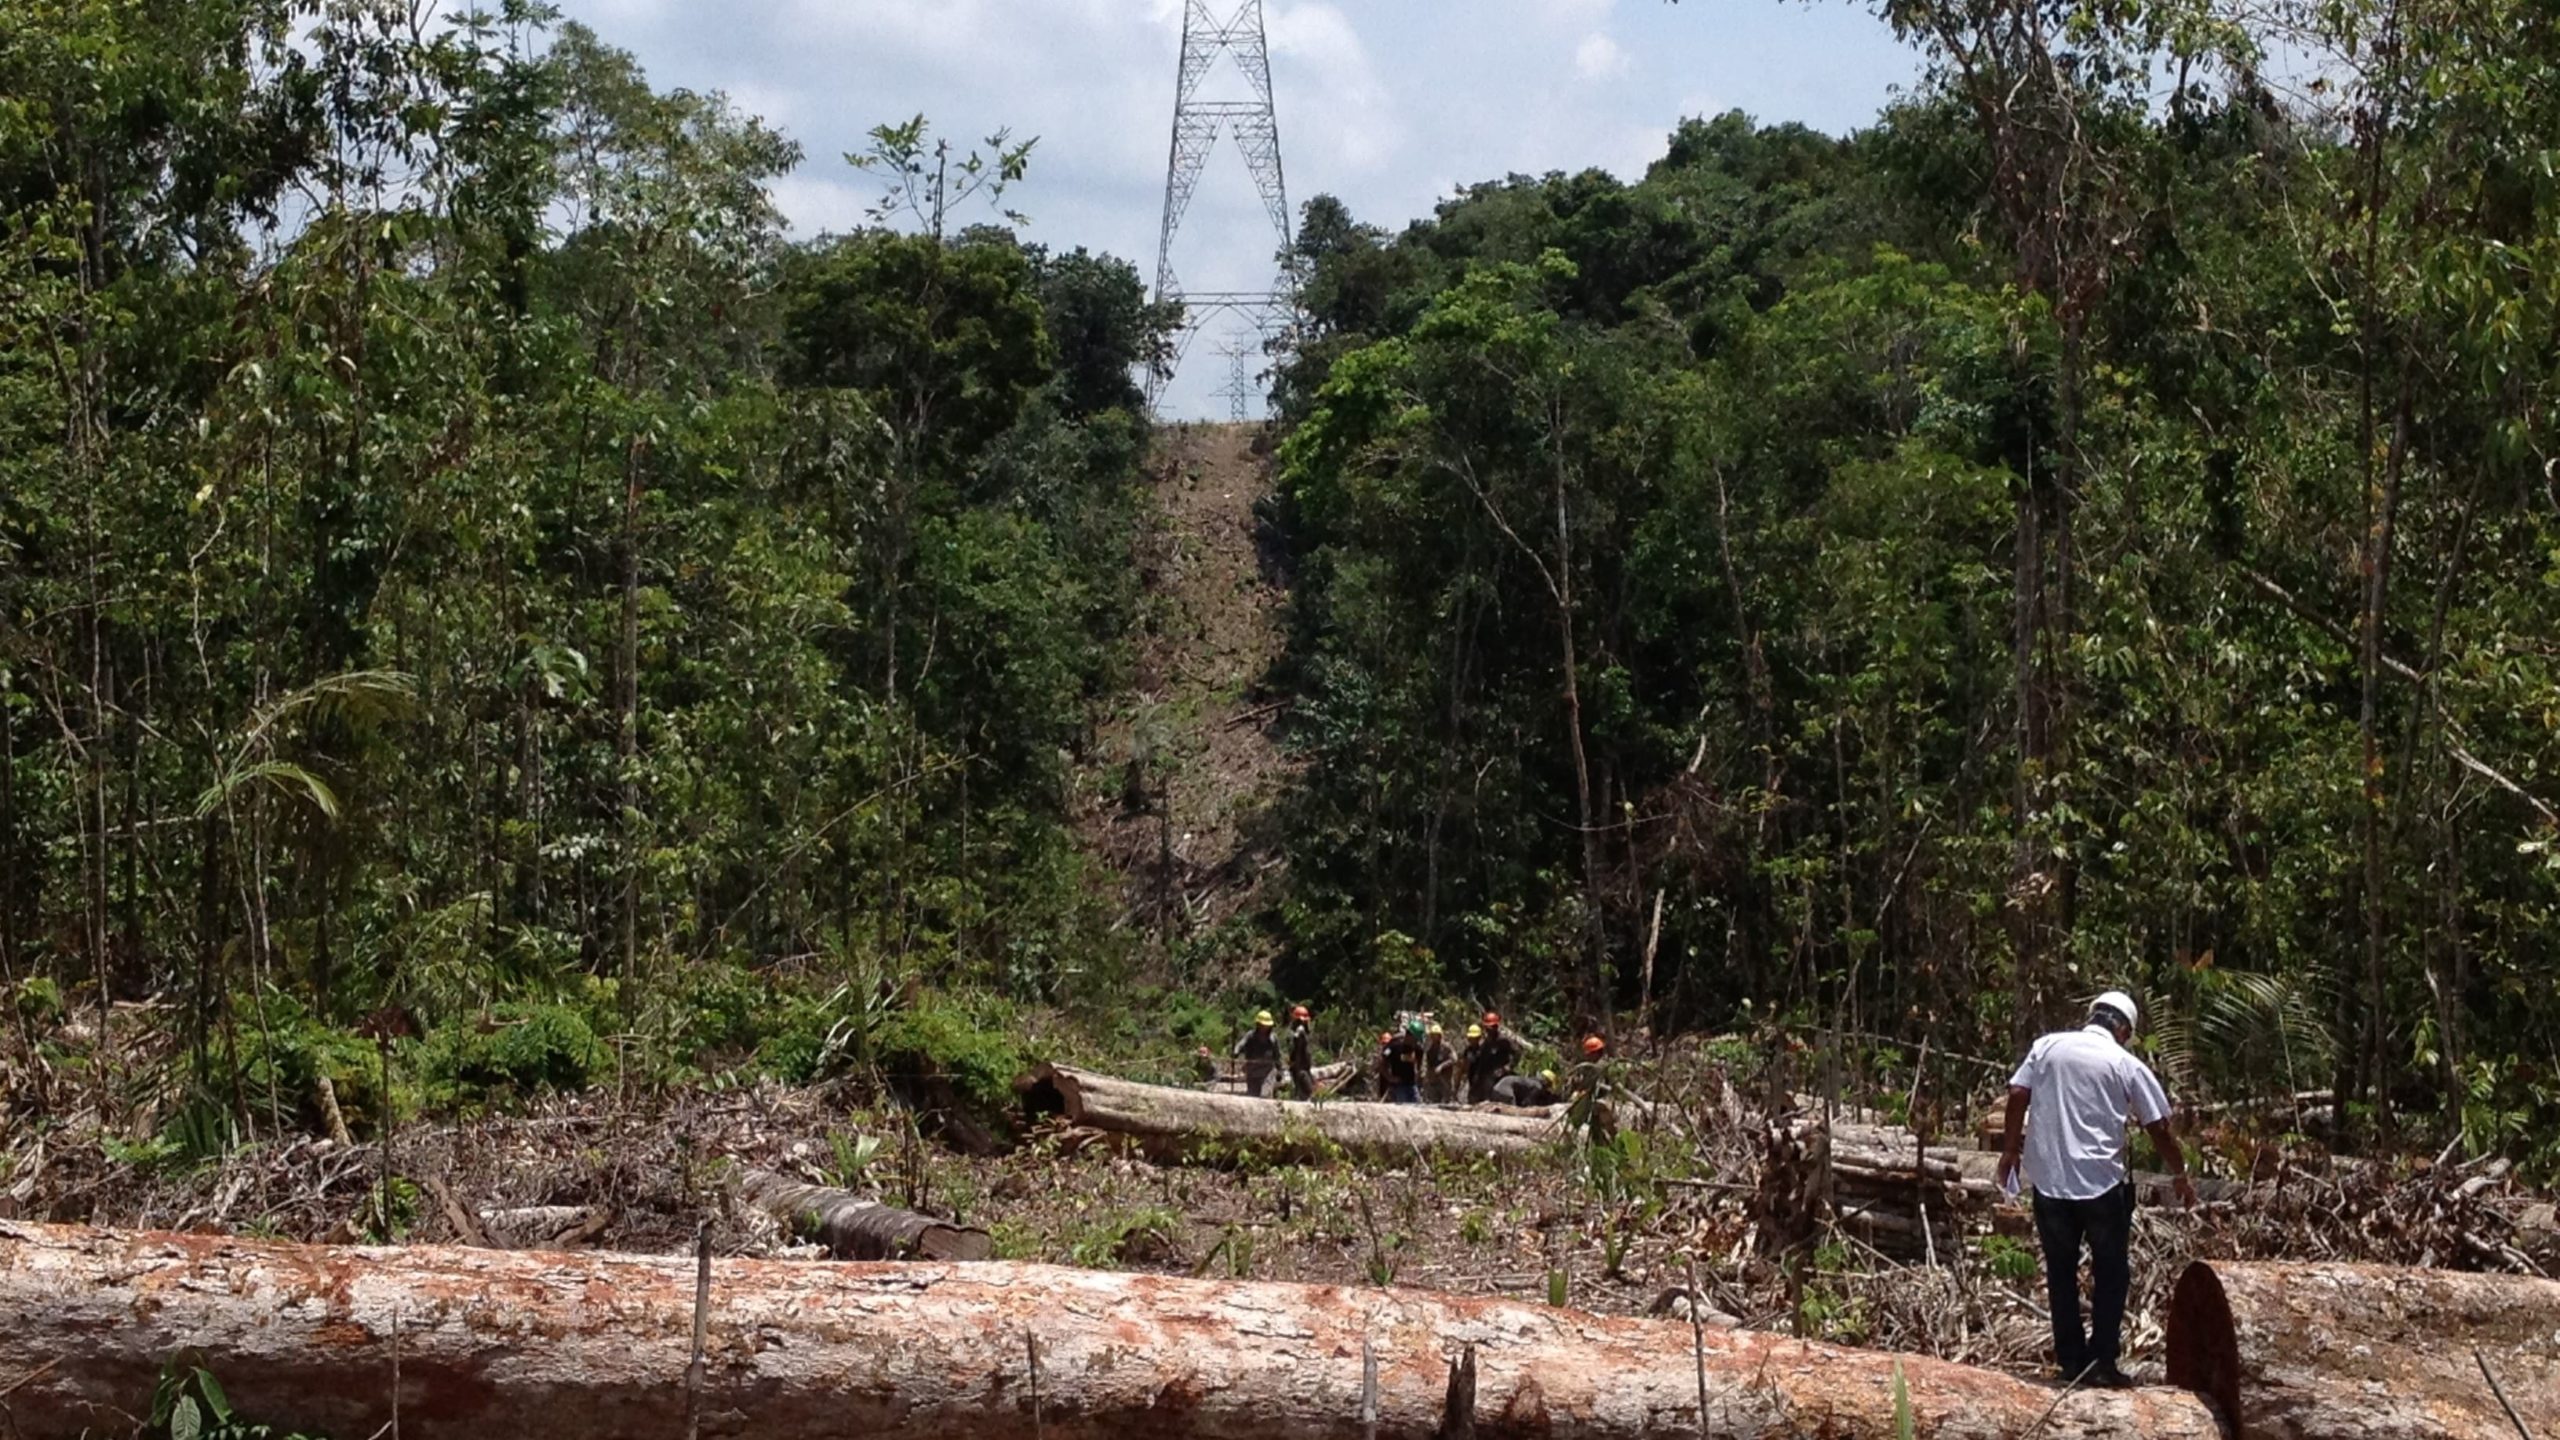 Biogás, uma solução energética para a Amazônia Legal. Na imagem, obras de instalação do Linhão de Tucuruí, no trecho de conexão de Manaus, em 2013. Complexidade da região mantém regiões isoladas do sistema nacional de energia (Foto: PAC/Ministério do Planejamento)